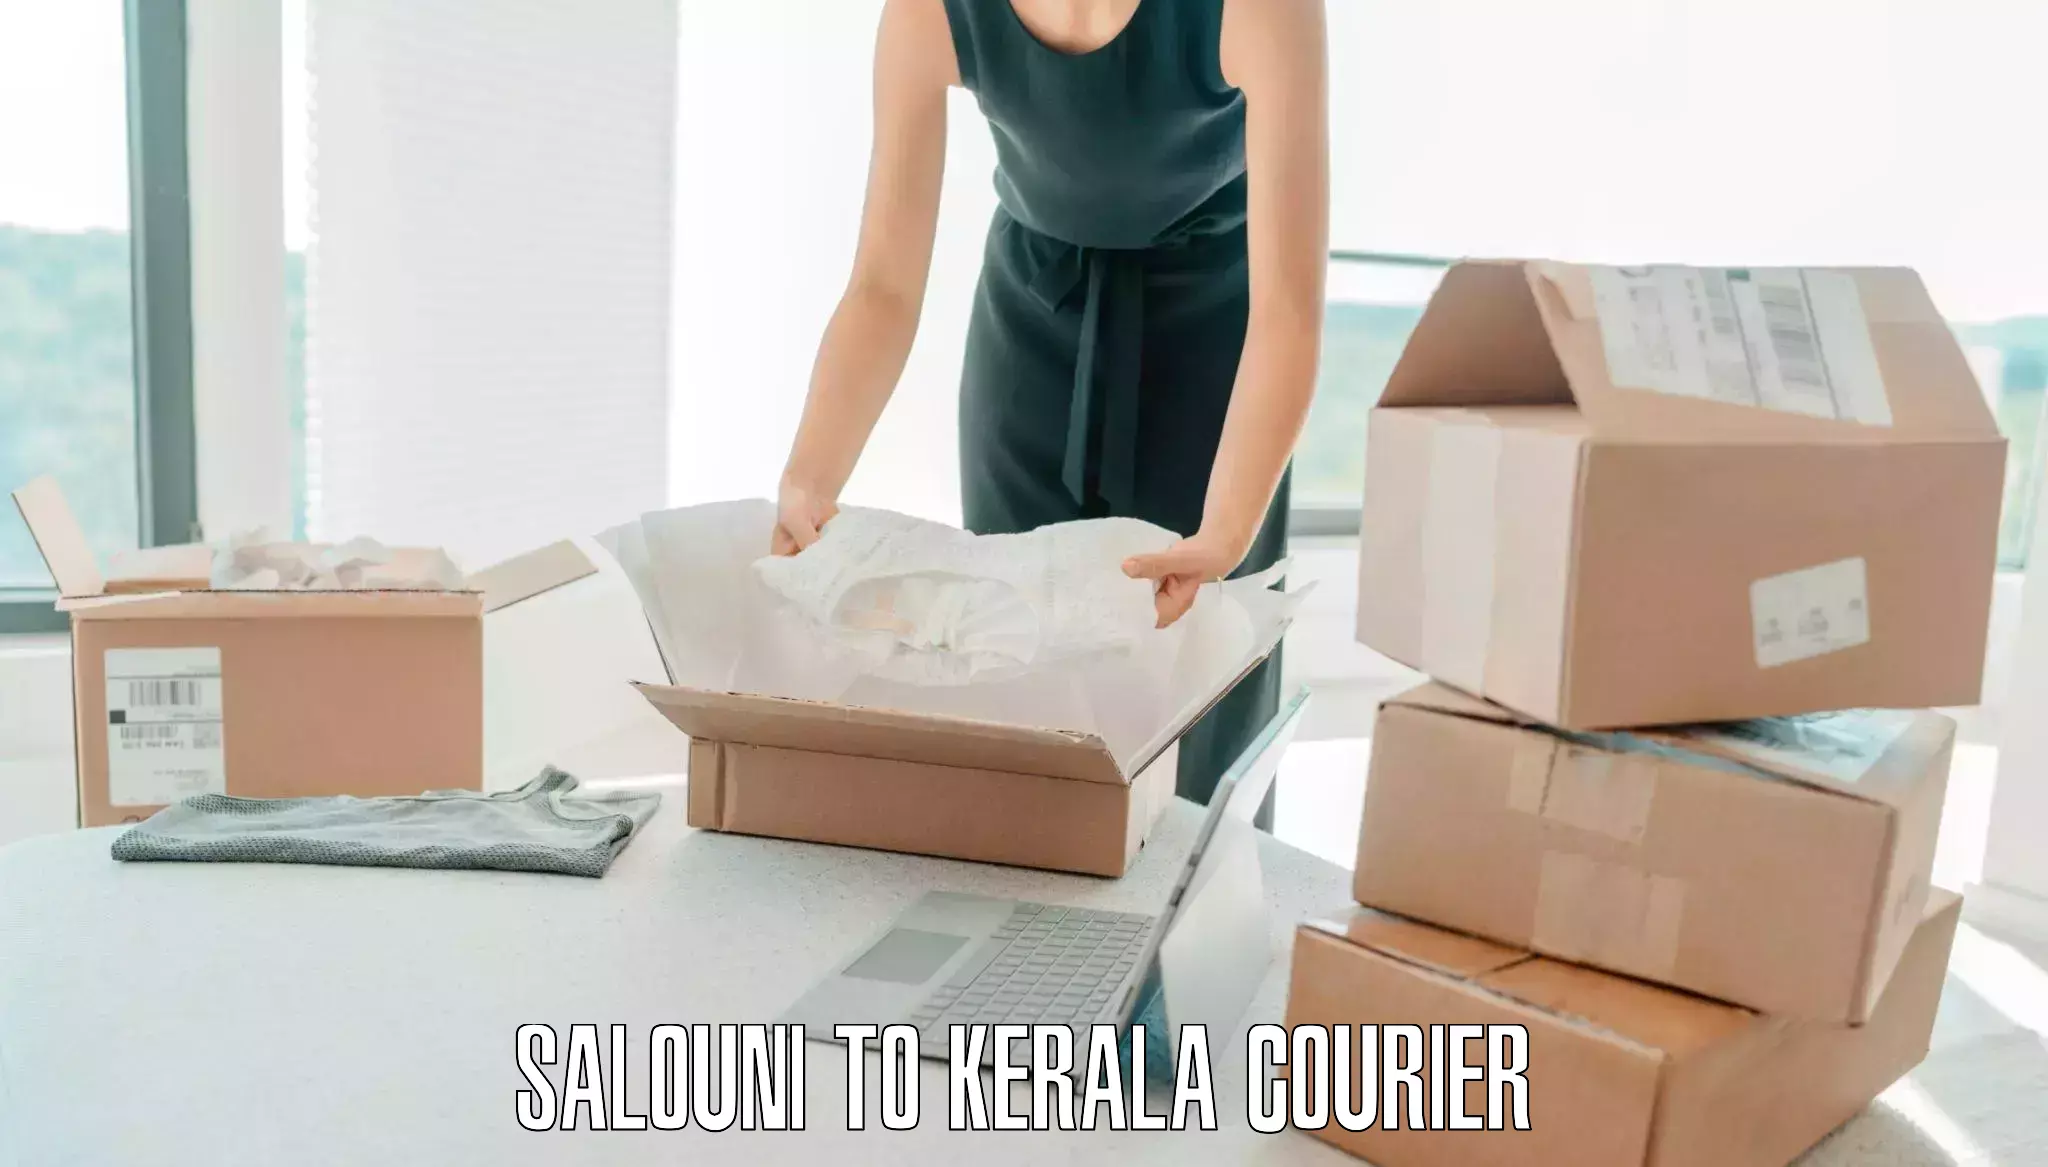 Reliable baggage delivery Salouni to Kerala